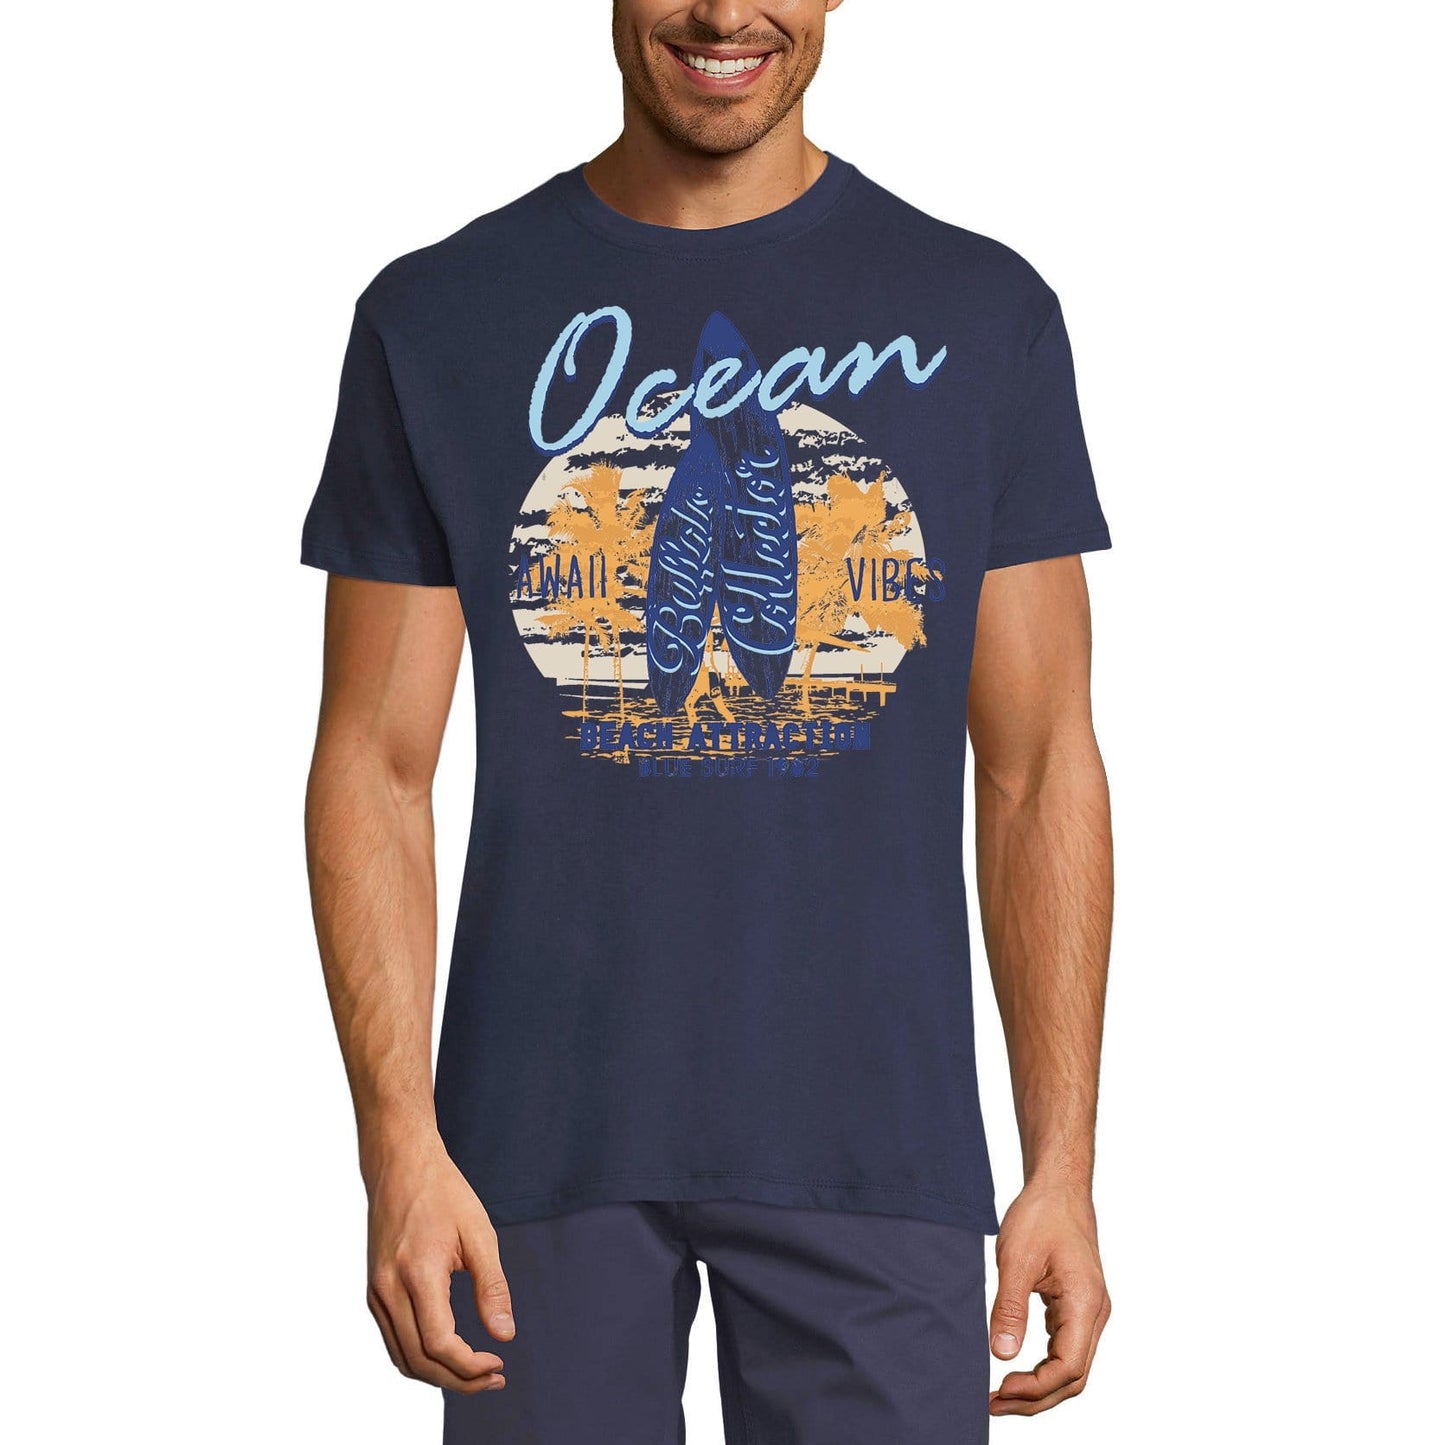 ULTRABASIC Men's Novelty T-Shirt Ocean Awaii Vibes Beach Attraction - Surf Tee Shirt